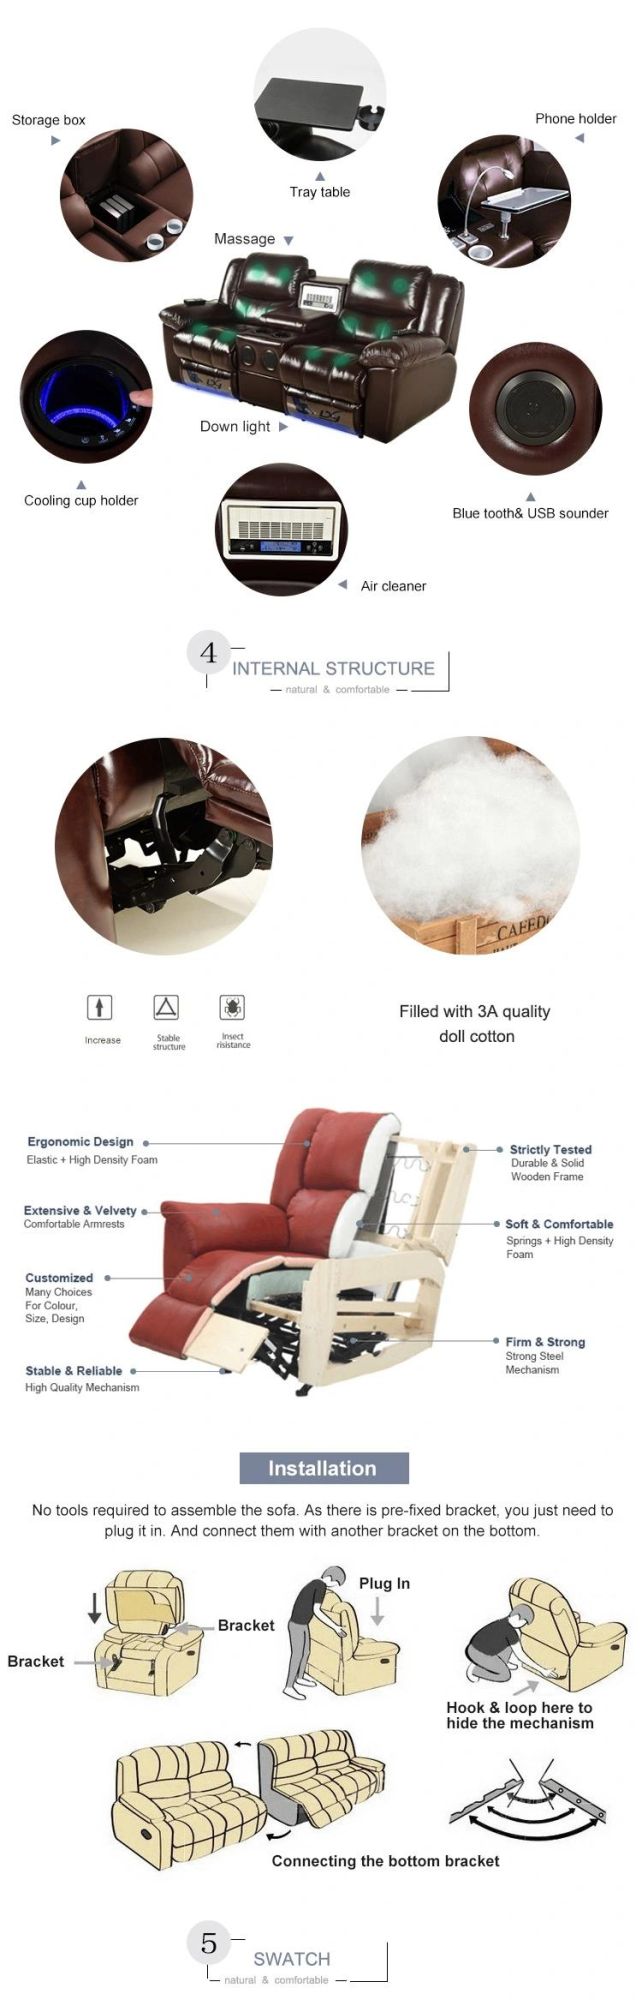 Modern Wholesale Furniture Classic Design Furniture Recliner China Genuine Leather Sofa